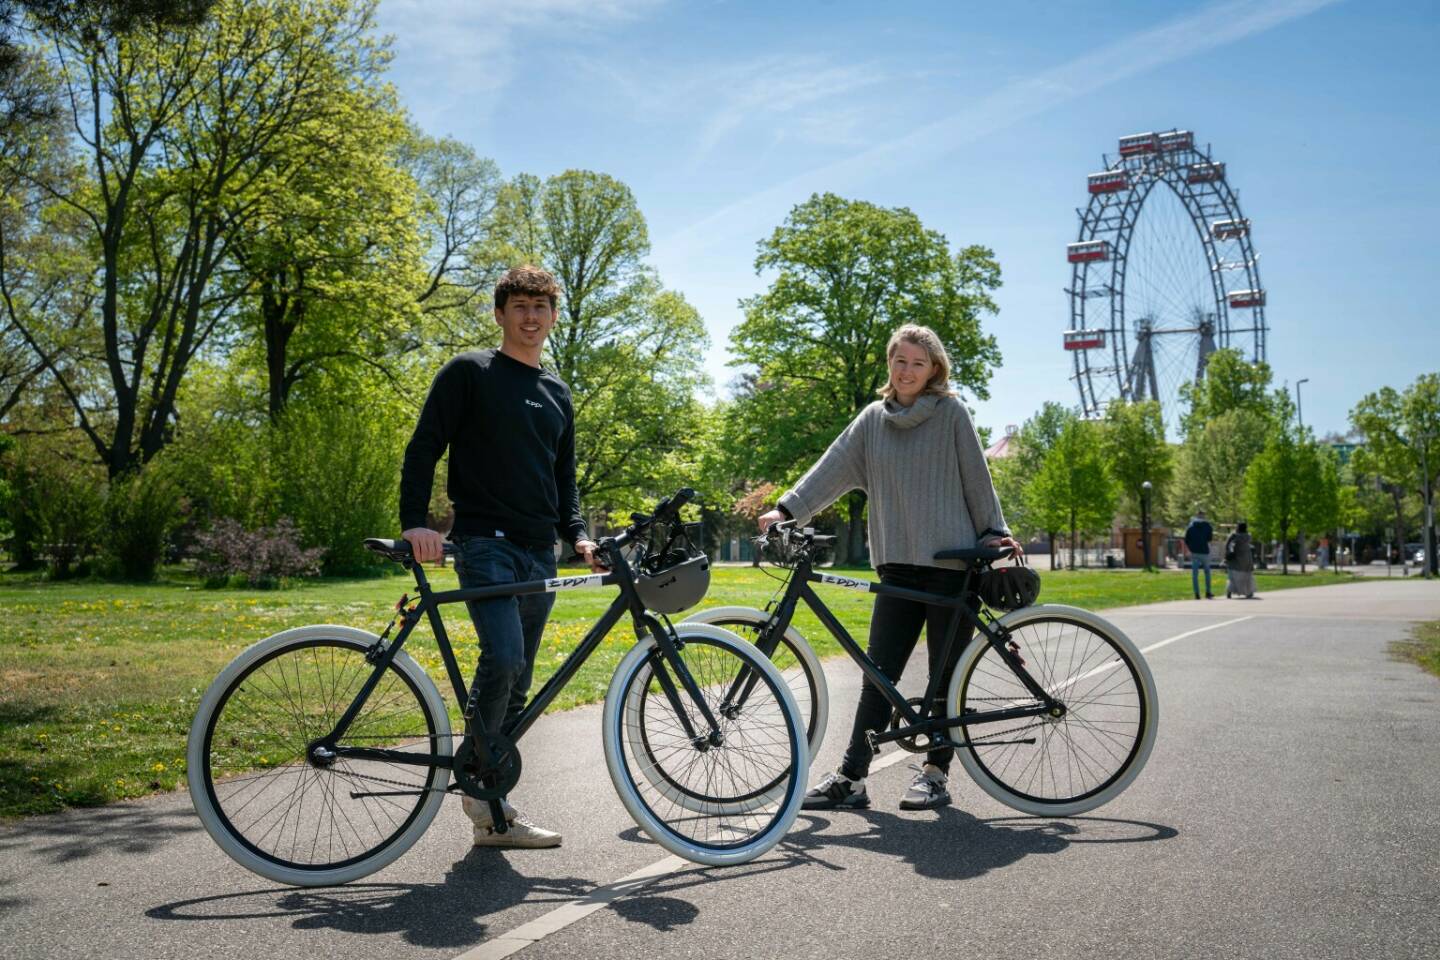 EDDI Mobility GmbH: Startup EDDI Bike kooperiert mit ÖBB – Fahrradabos als innovatives Mobilitätsangebot, EDDI Co-Founder Stephan Ziegler gemeinsam mit Cornelia Walch, Fahrrad-Konzernkoordinatorin der ÖBB. Credit: ÖBB/Michael Posch